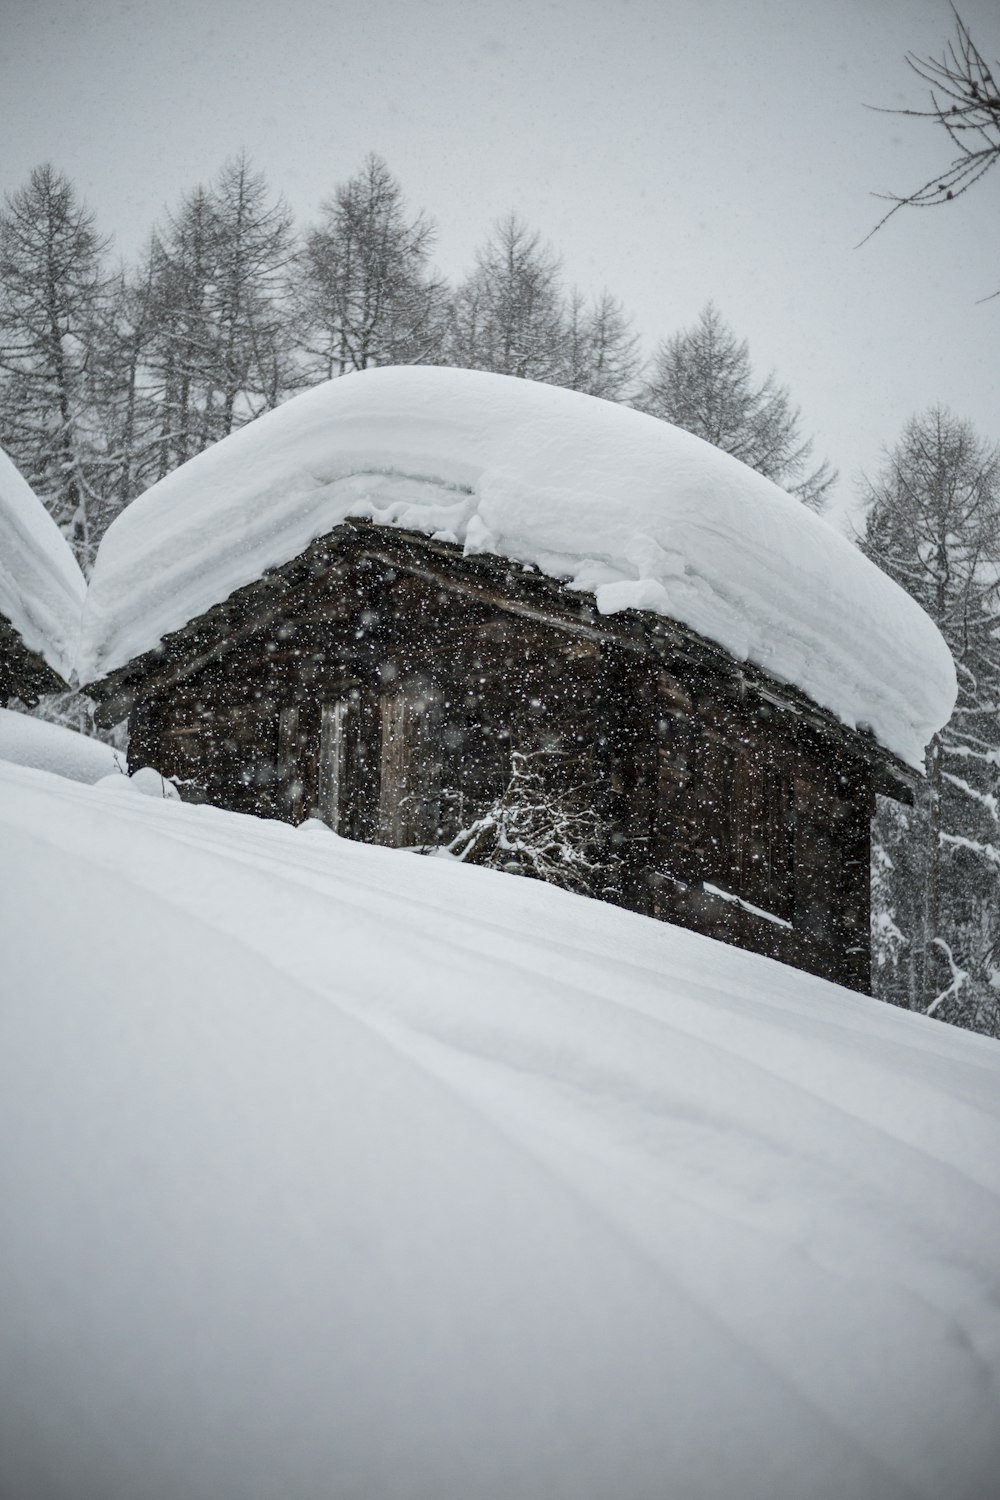 Foto eines schneebedeckten Hauses in der Nähe von Bäumen